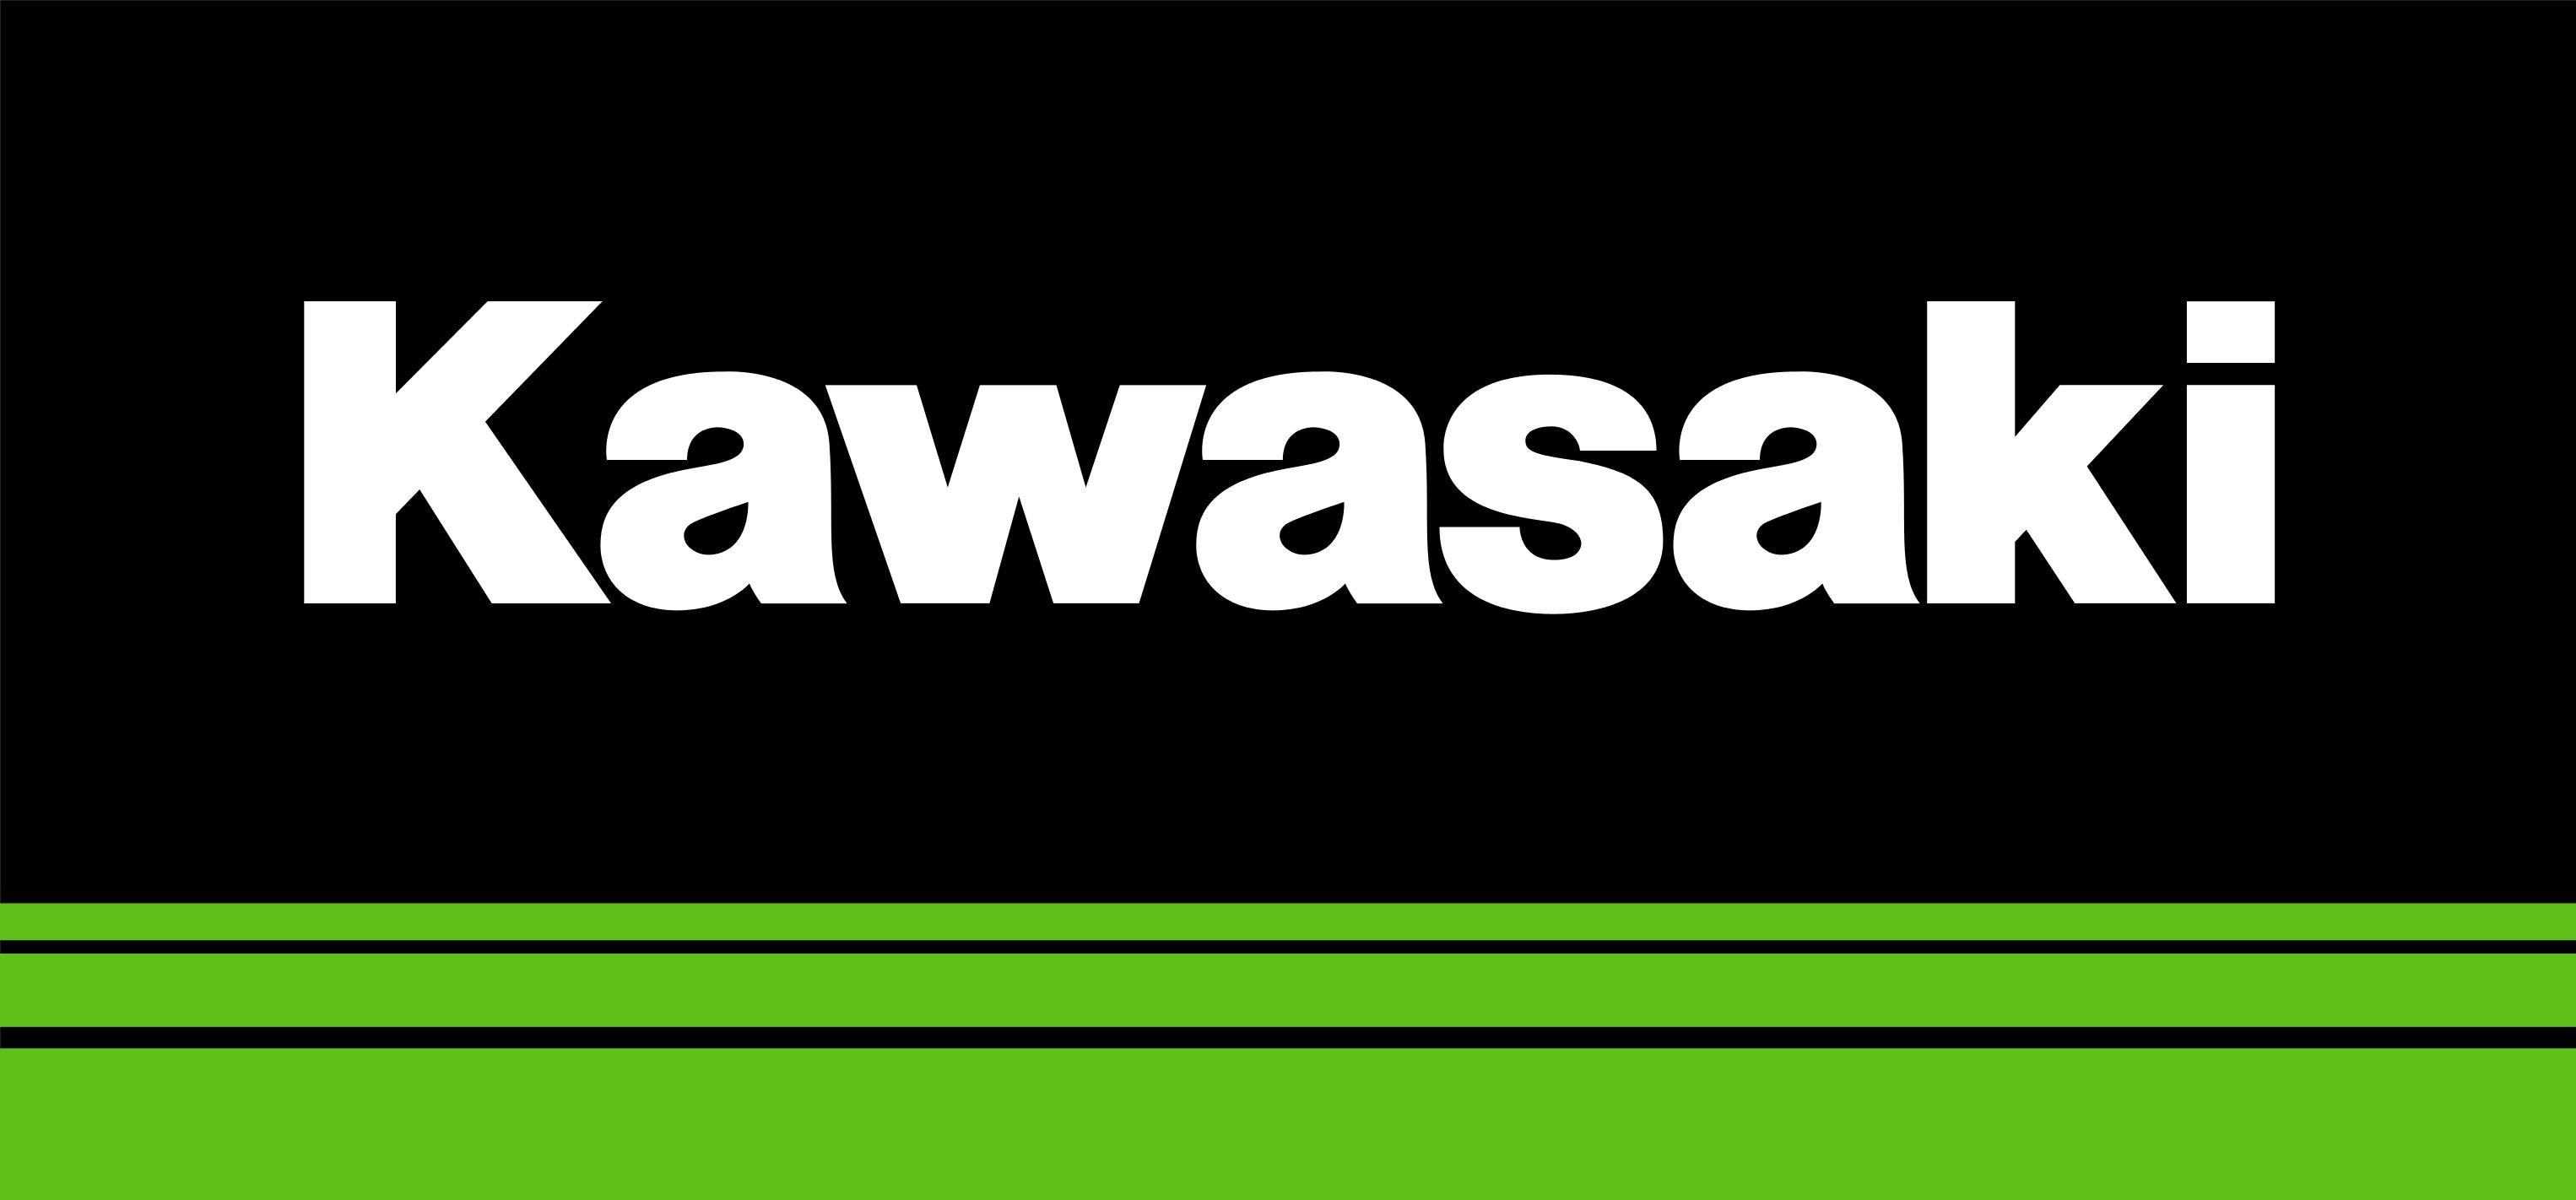 Kawasaki Logo - KibrisPDR